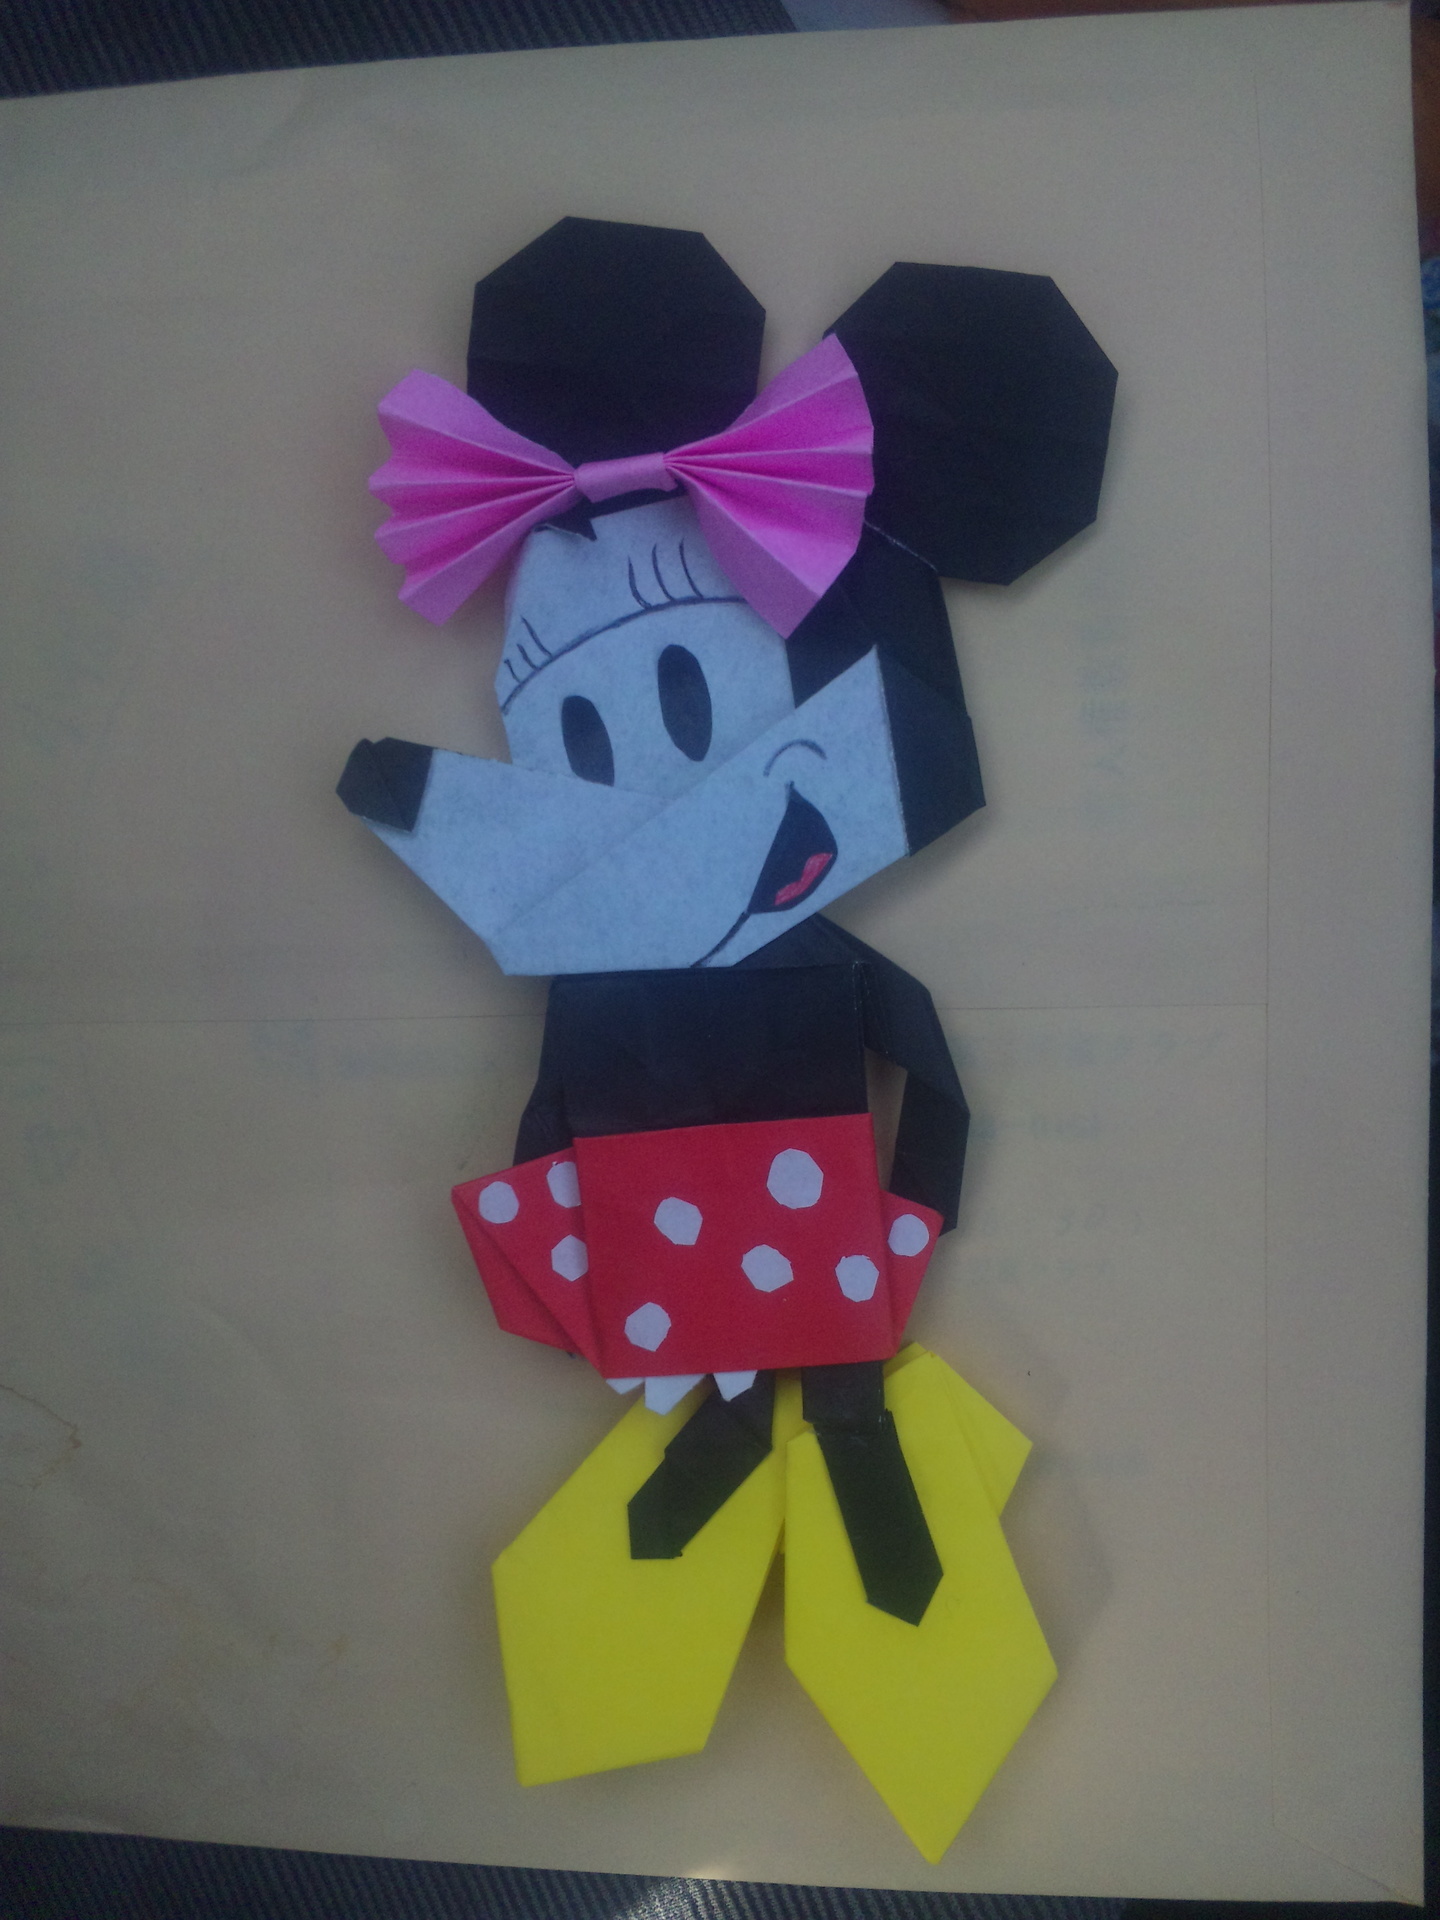 ミニーマウス 昨日の続き 折り紙でアニメキャラクターを折ってみた